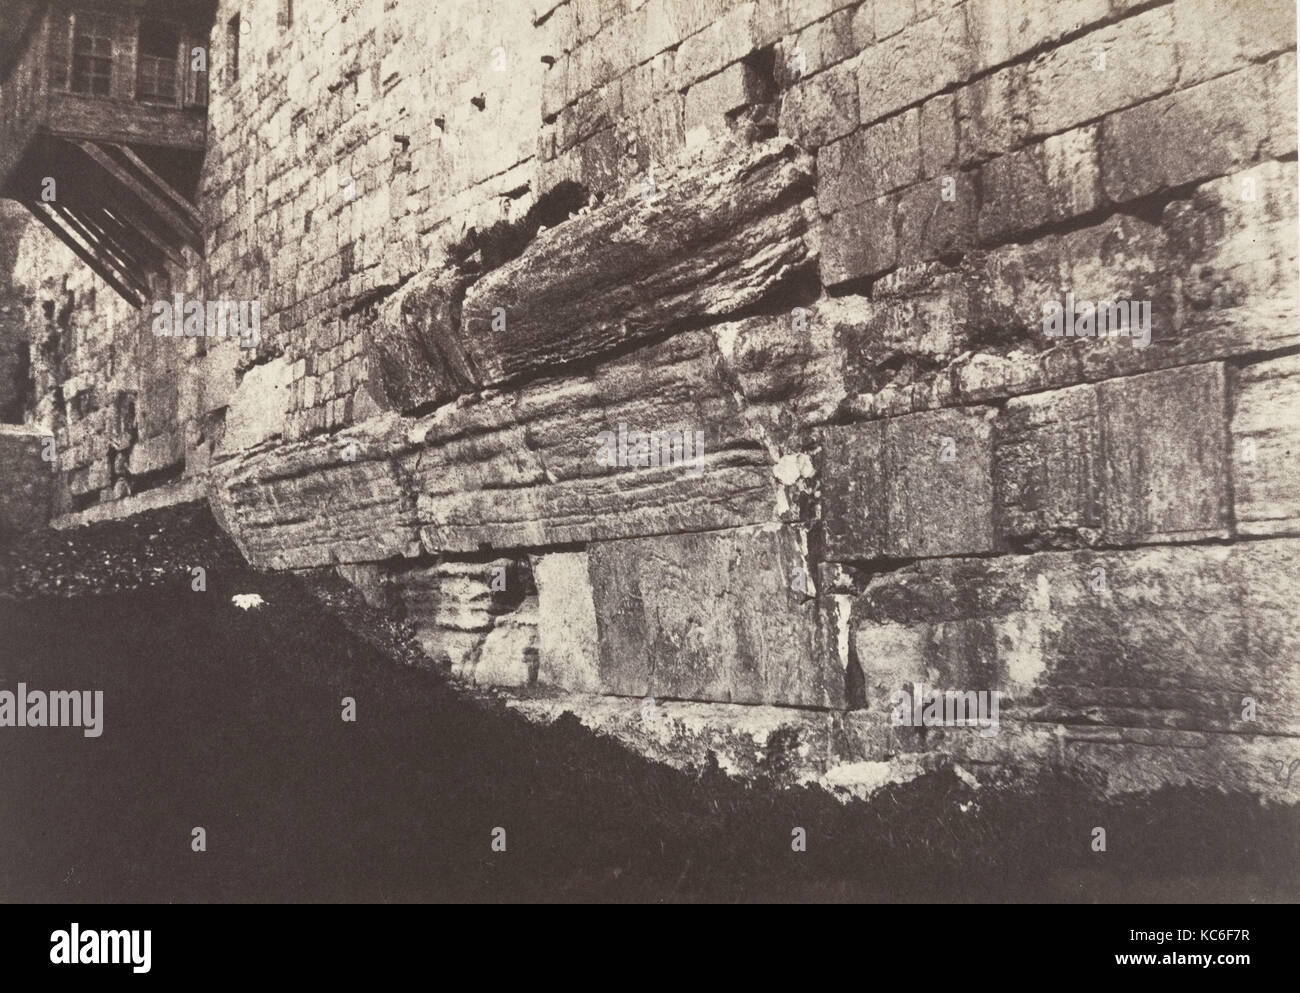 Jérusalem, Enceinte du Temple, Arche du Pont Salomonien qui reliait Moria à Sion, Auguste Salzmann, 1854 Stock Photo